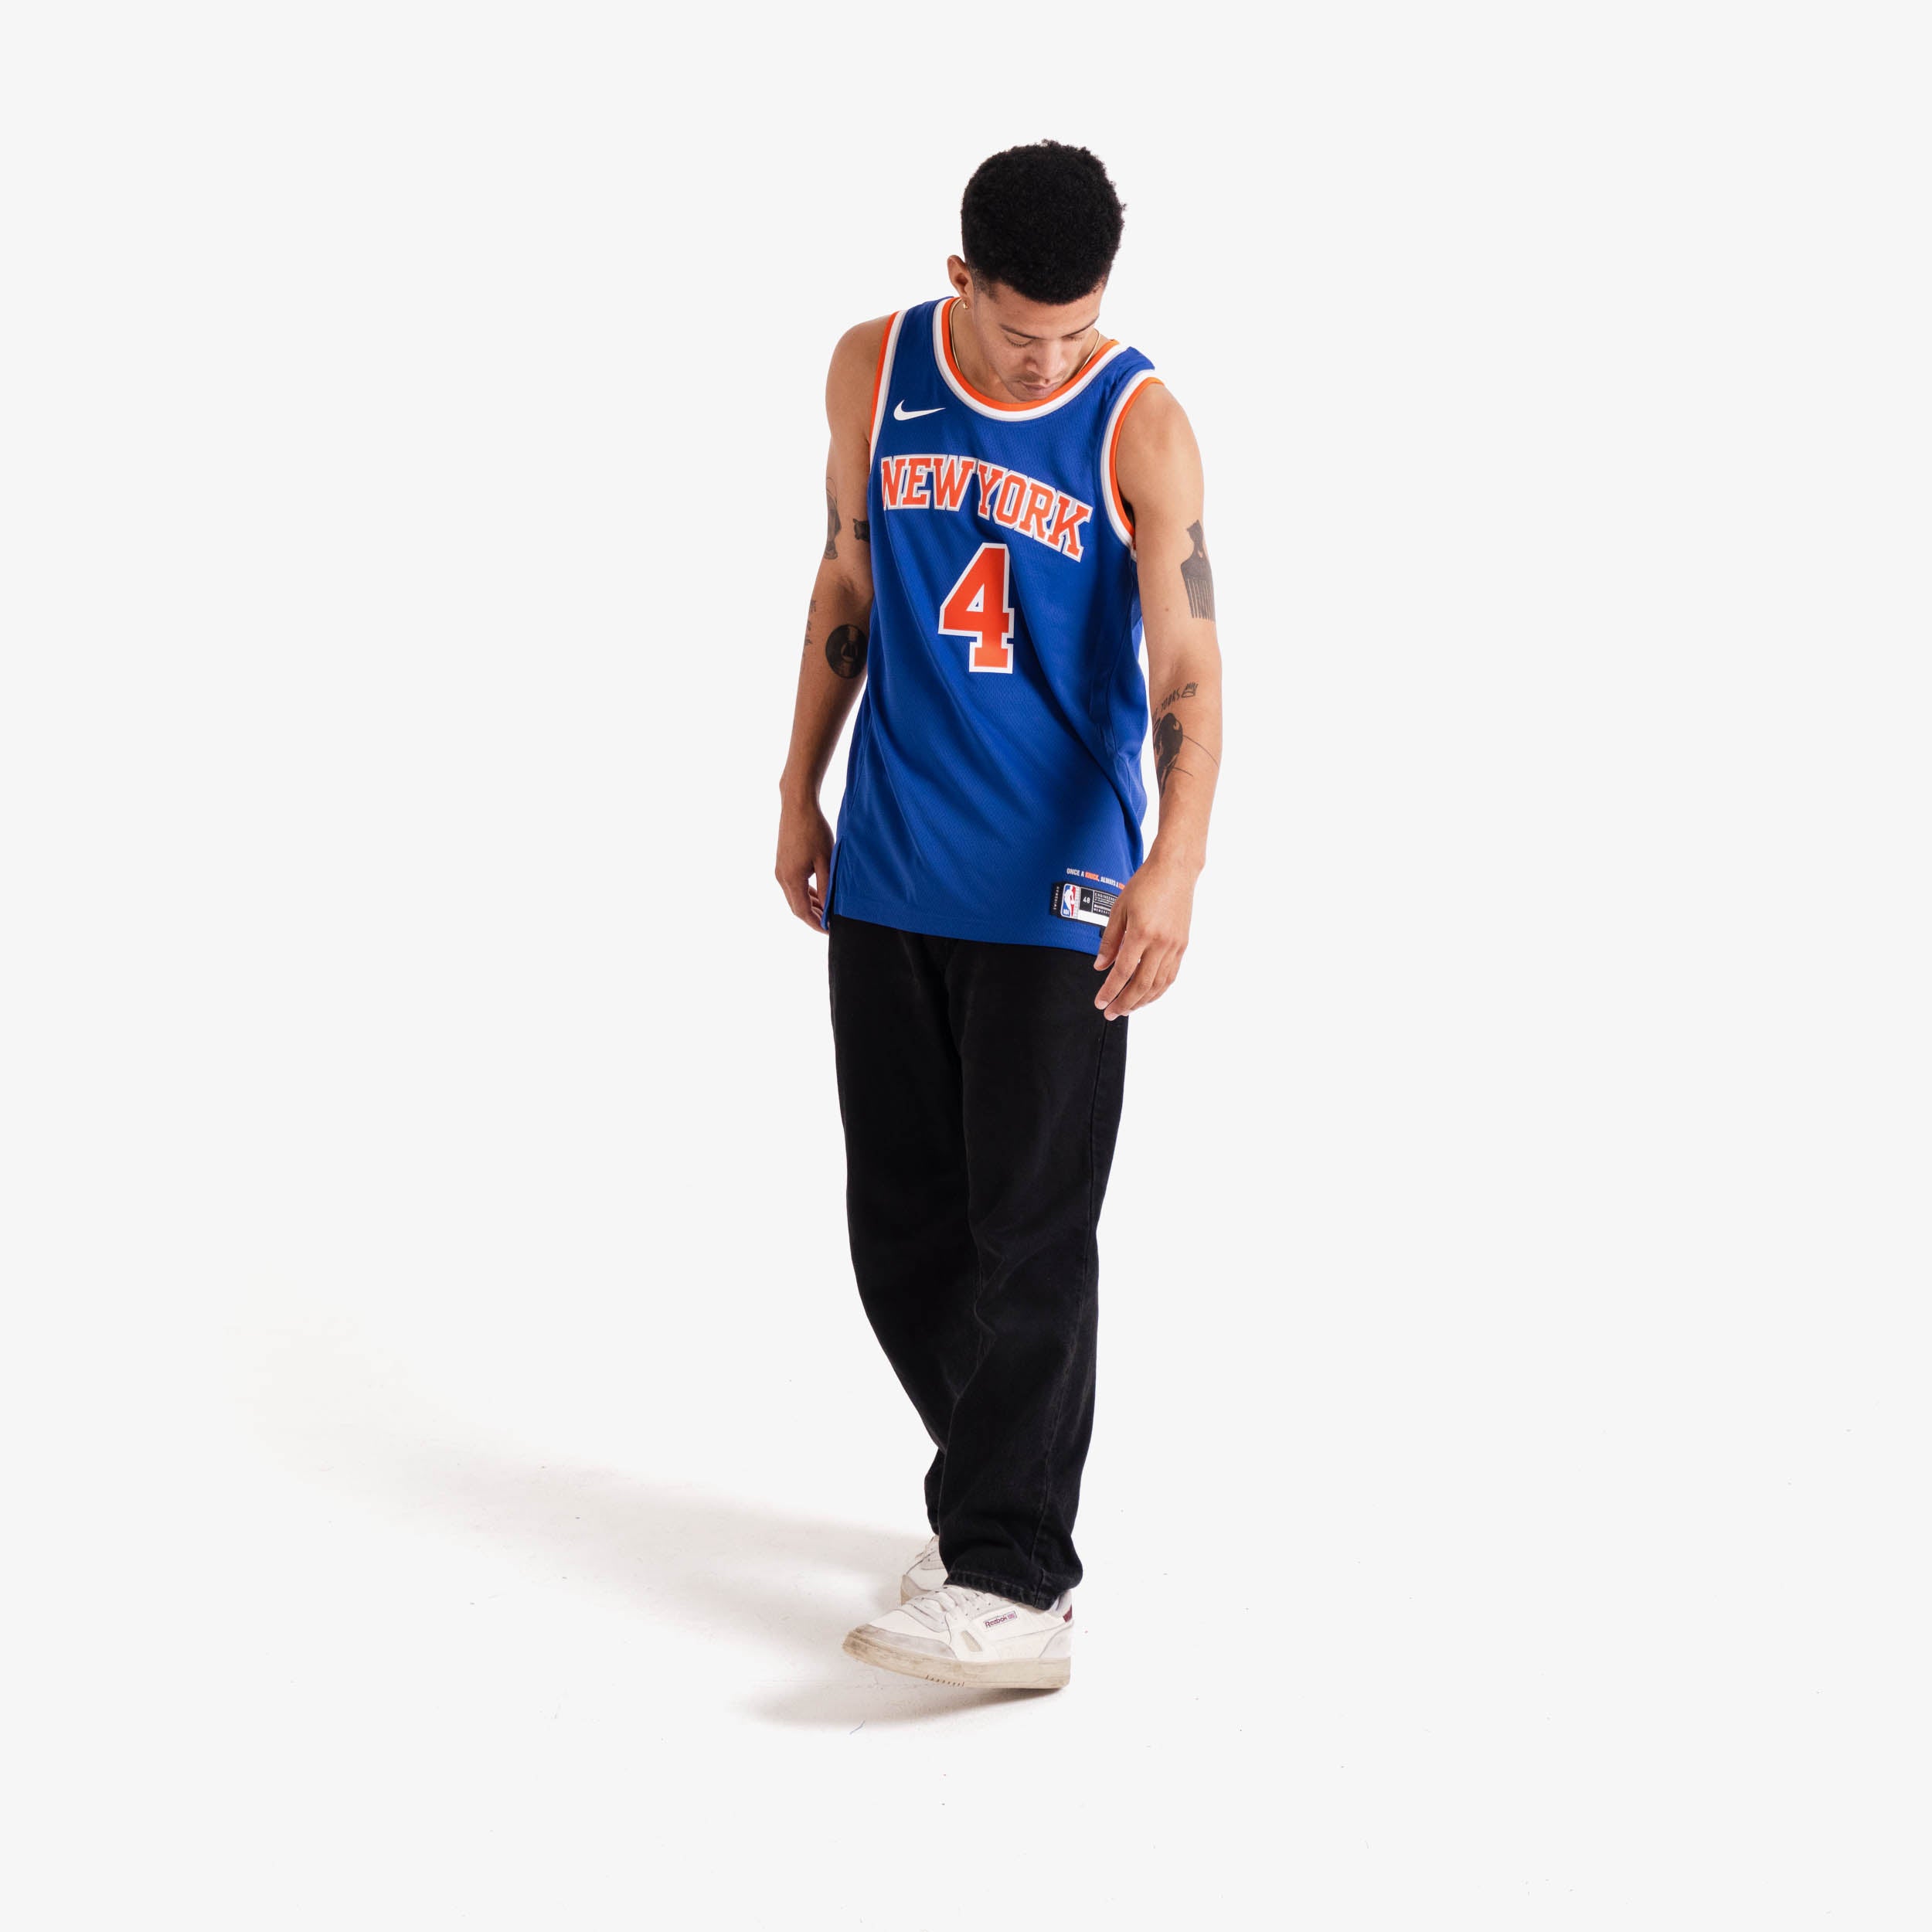 New York Knicks Statement Edition Jordan Dri-FIT NBA Swingman